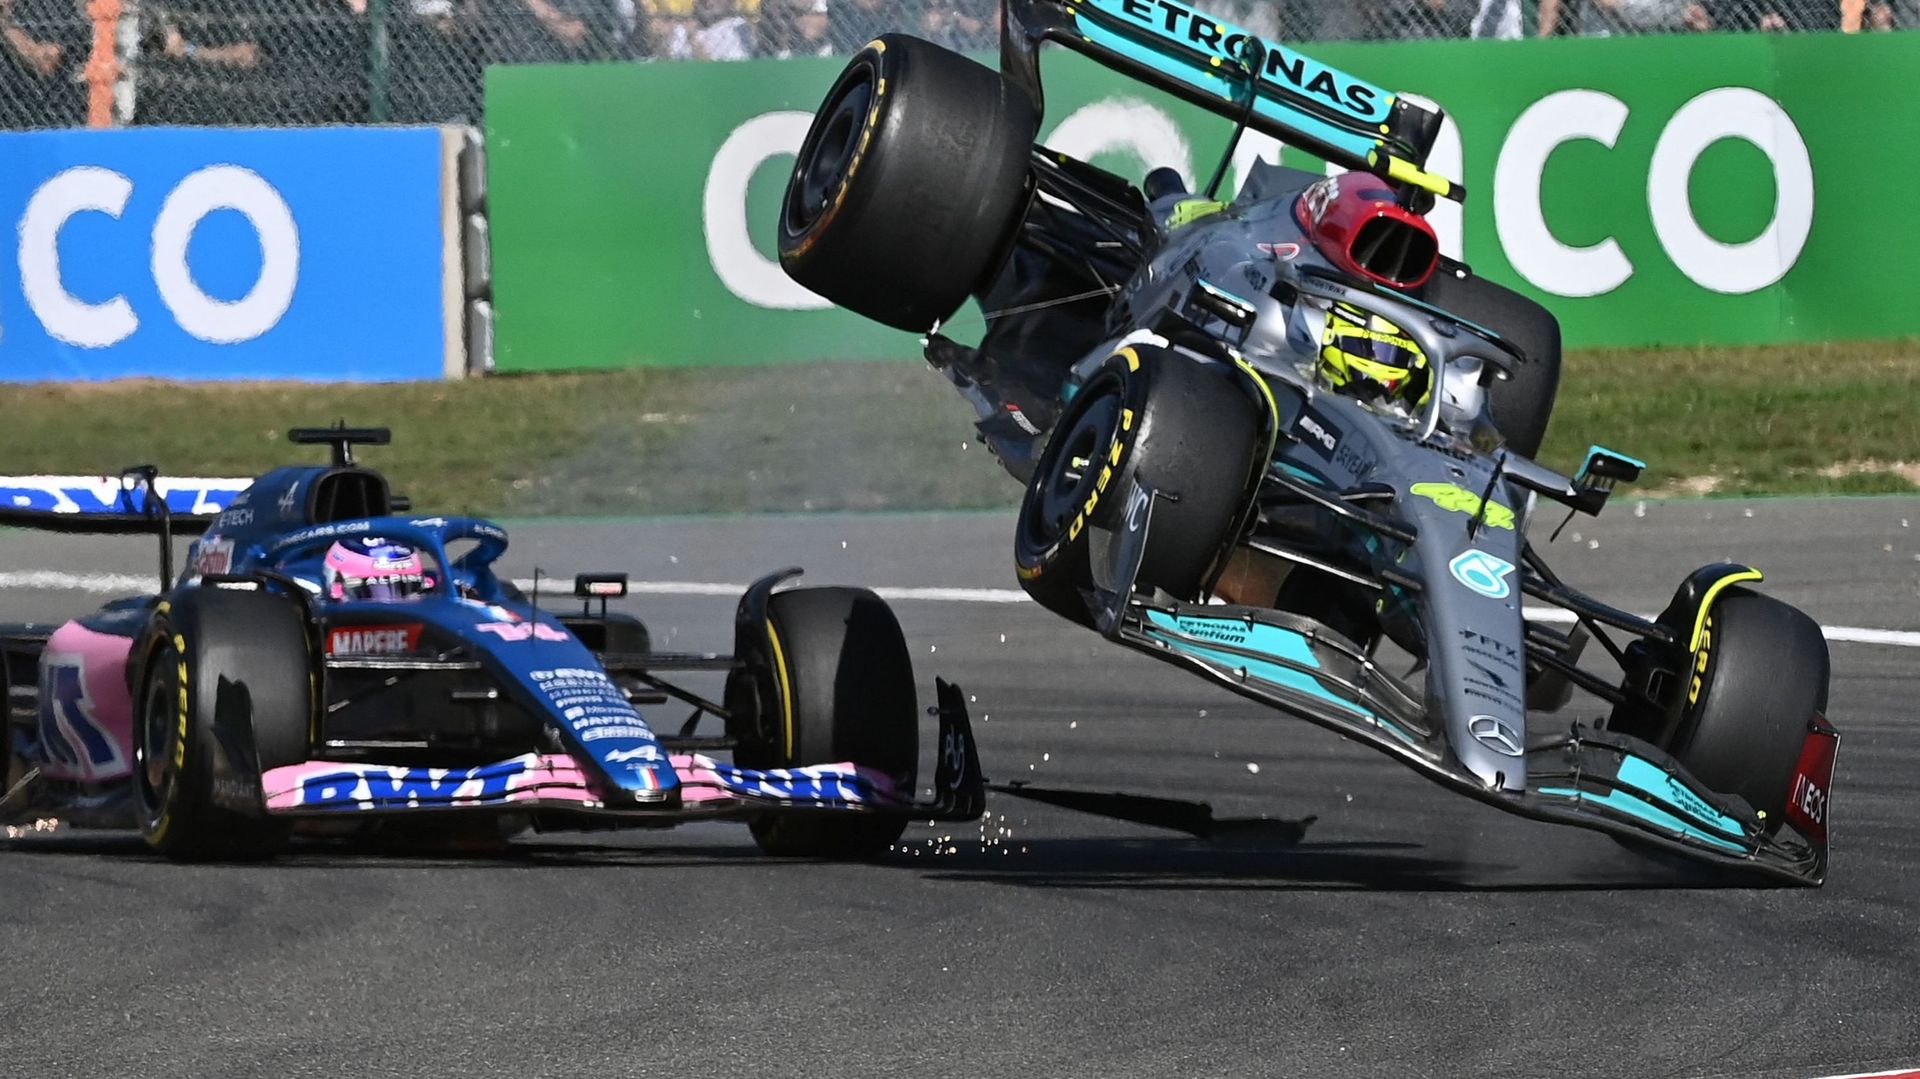 Accident entre deux voitures lors d'un Grand Prix de Formule 1